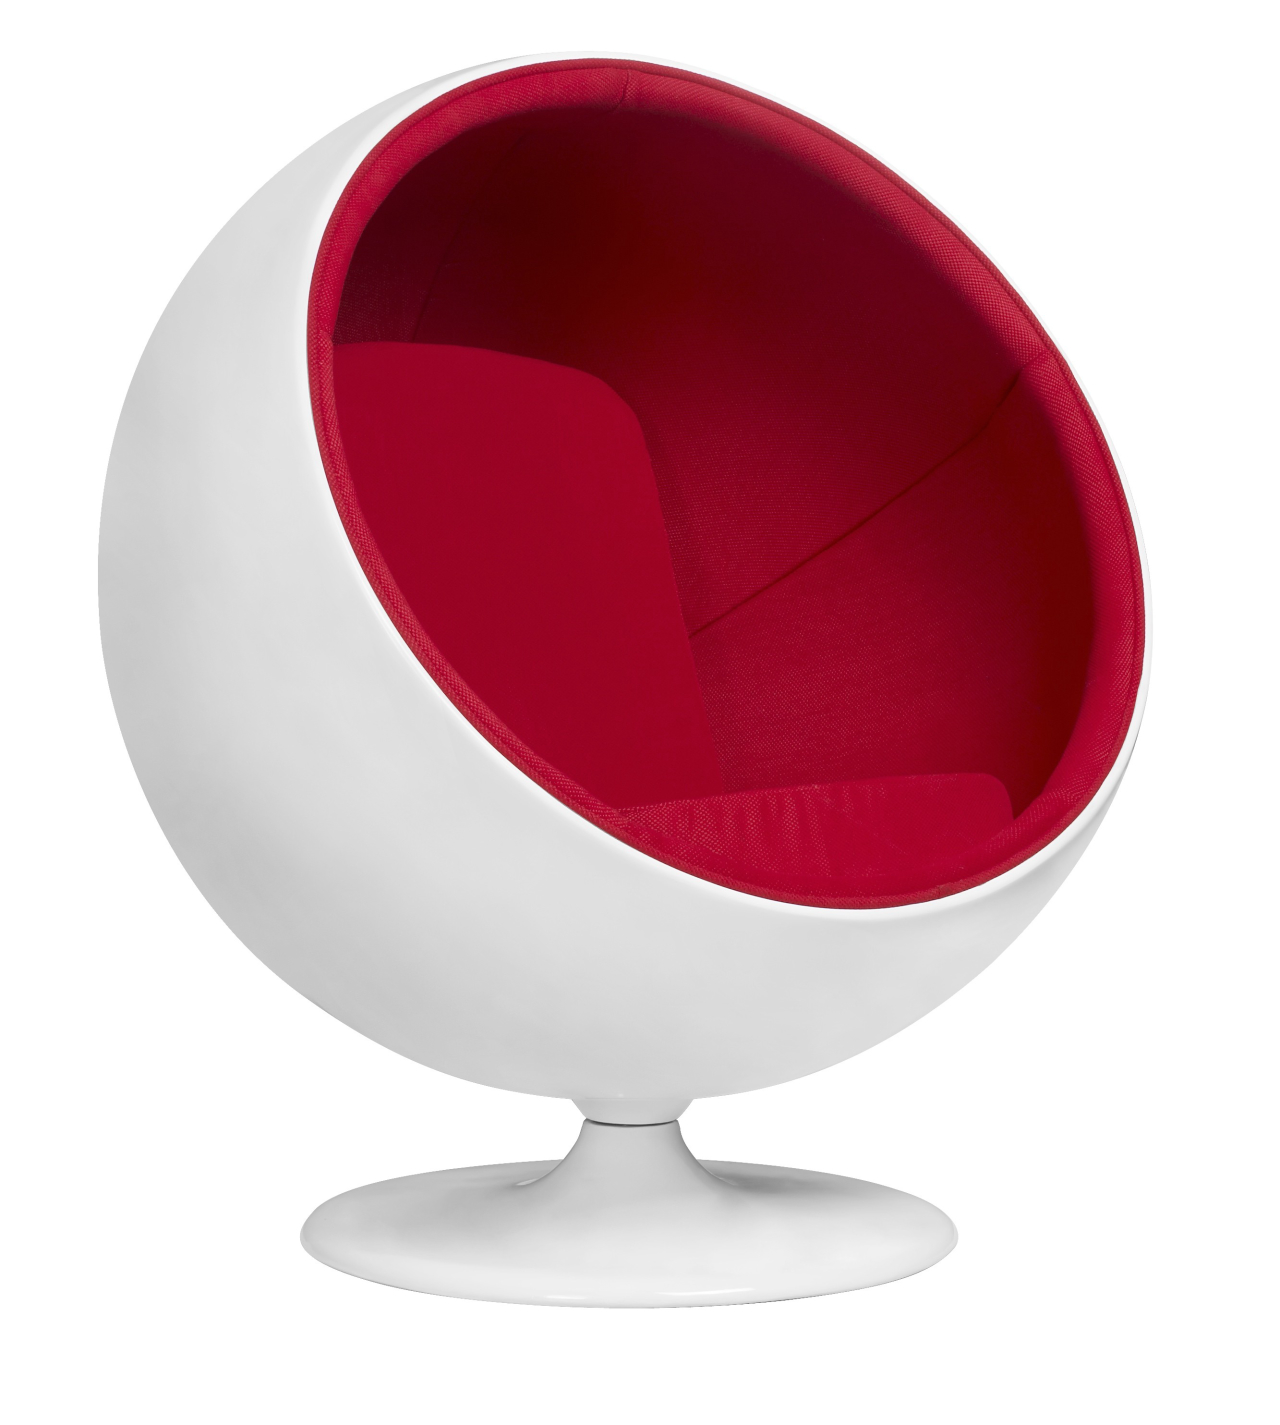 Ball Chair - A Ball Chair ou Globe Chair foi feita pelo designer Eero Aarnio em 1963. A cadeira é considerada um clássico do design industrial e seu formato geométrico cria um espaço privado para relaxar.<br>